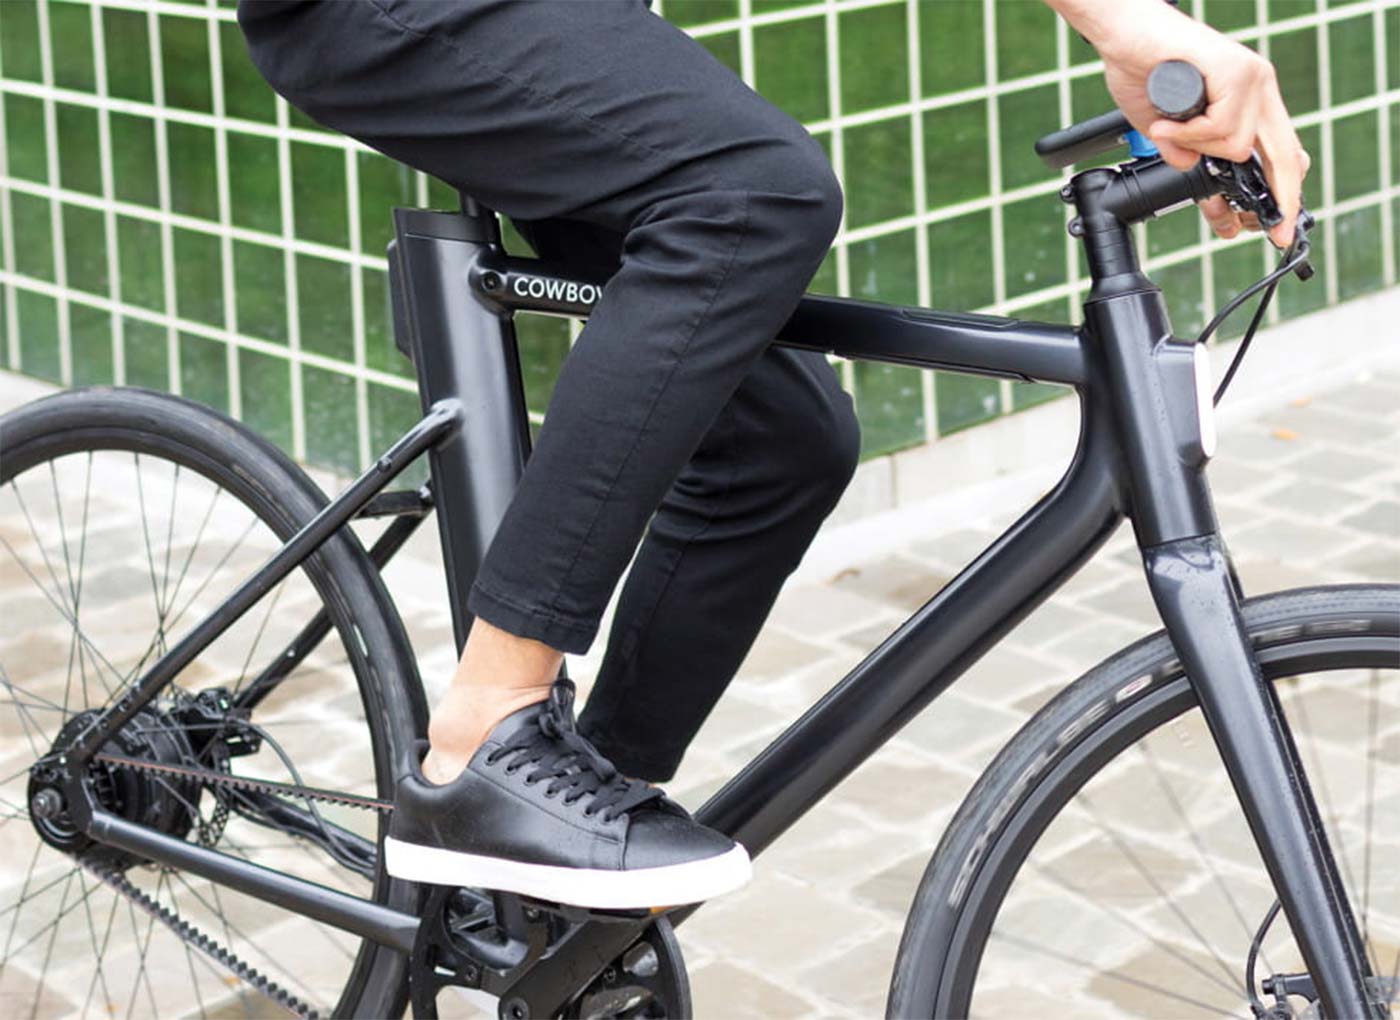 Seuls 68 % des Français considèrent le vélo électrique comme une pratique sportive